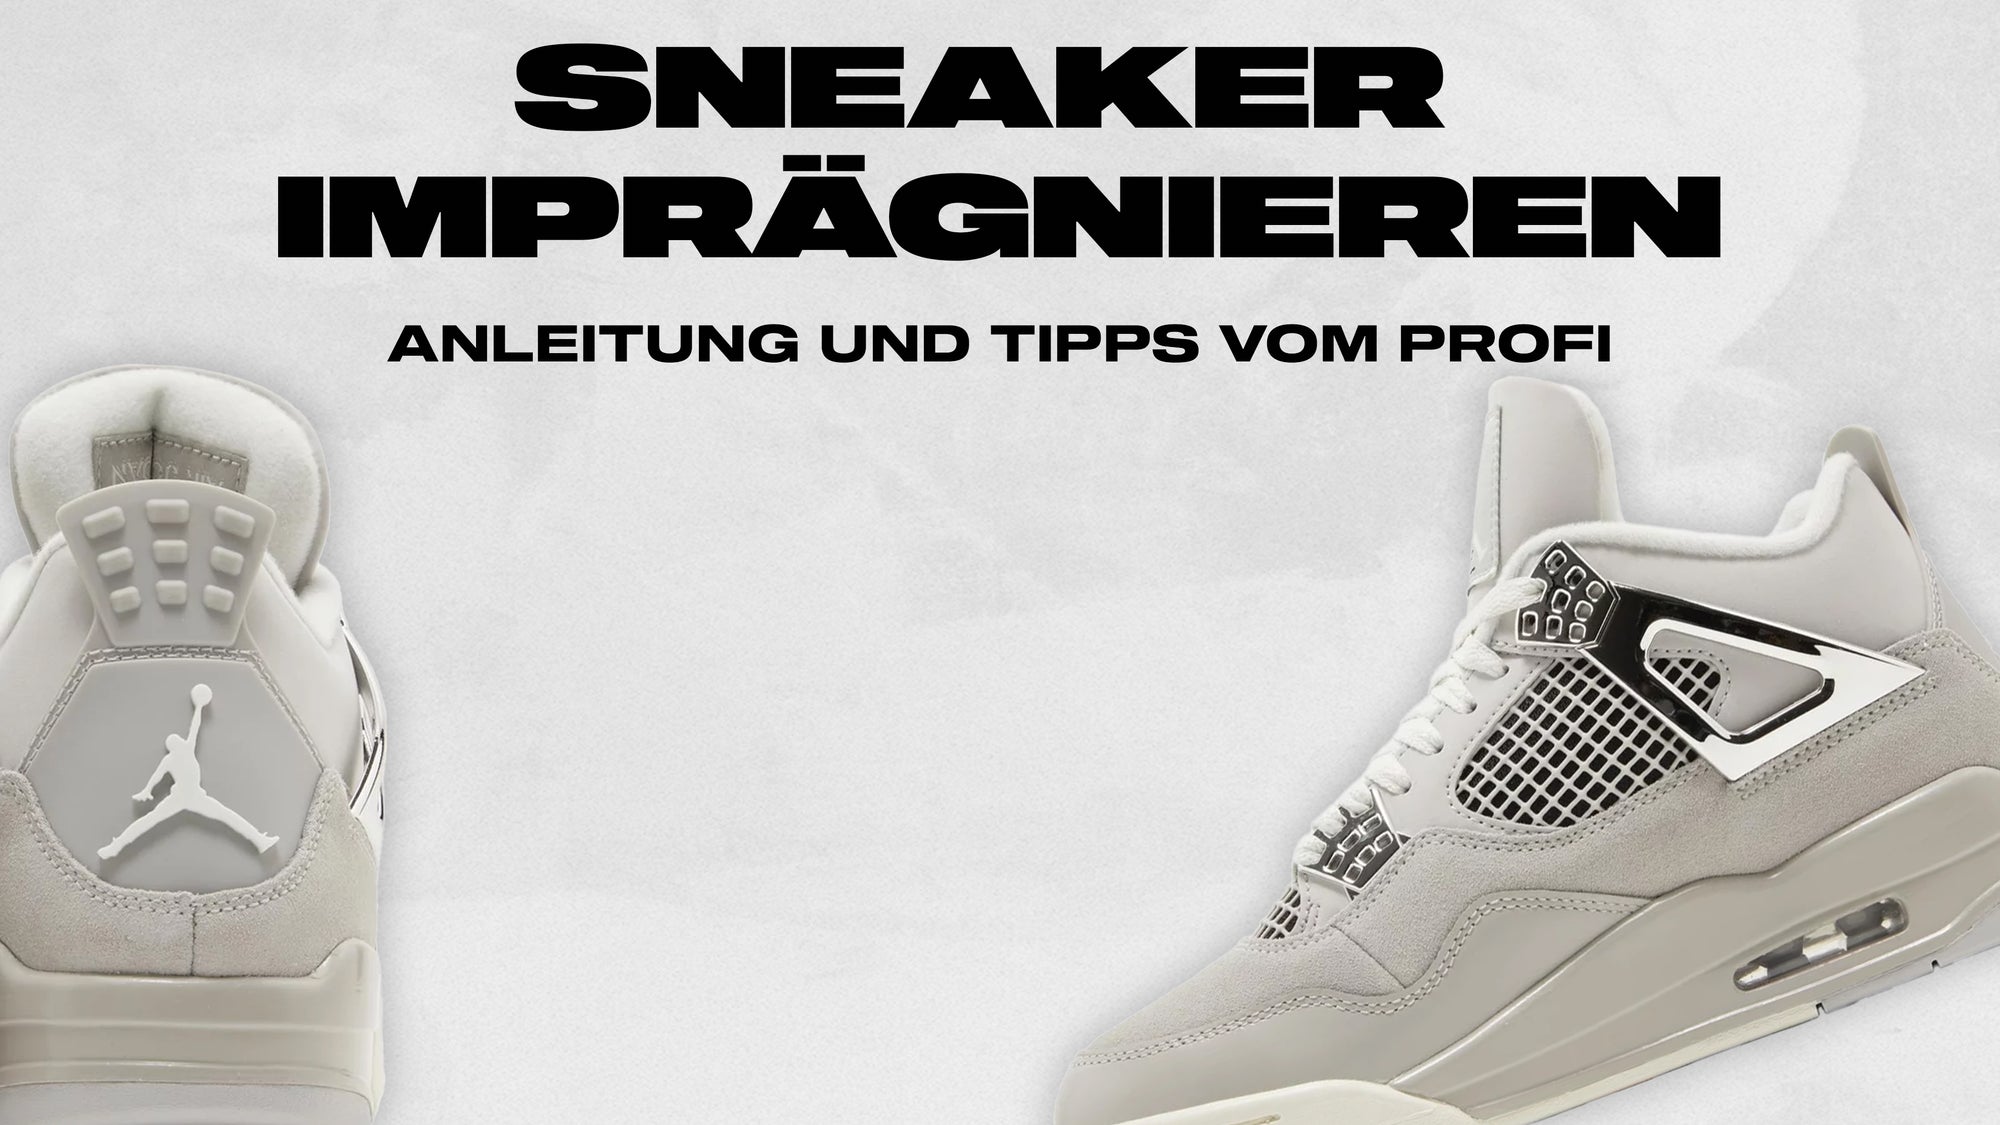 Sneaker imprägnieren: Anleitung und Tipps vom Profi